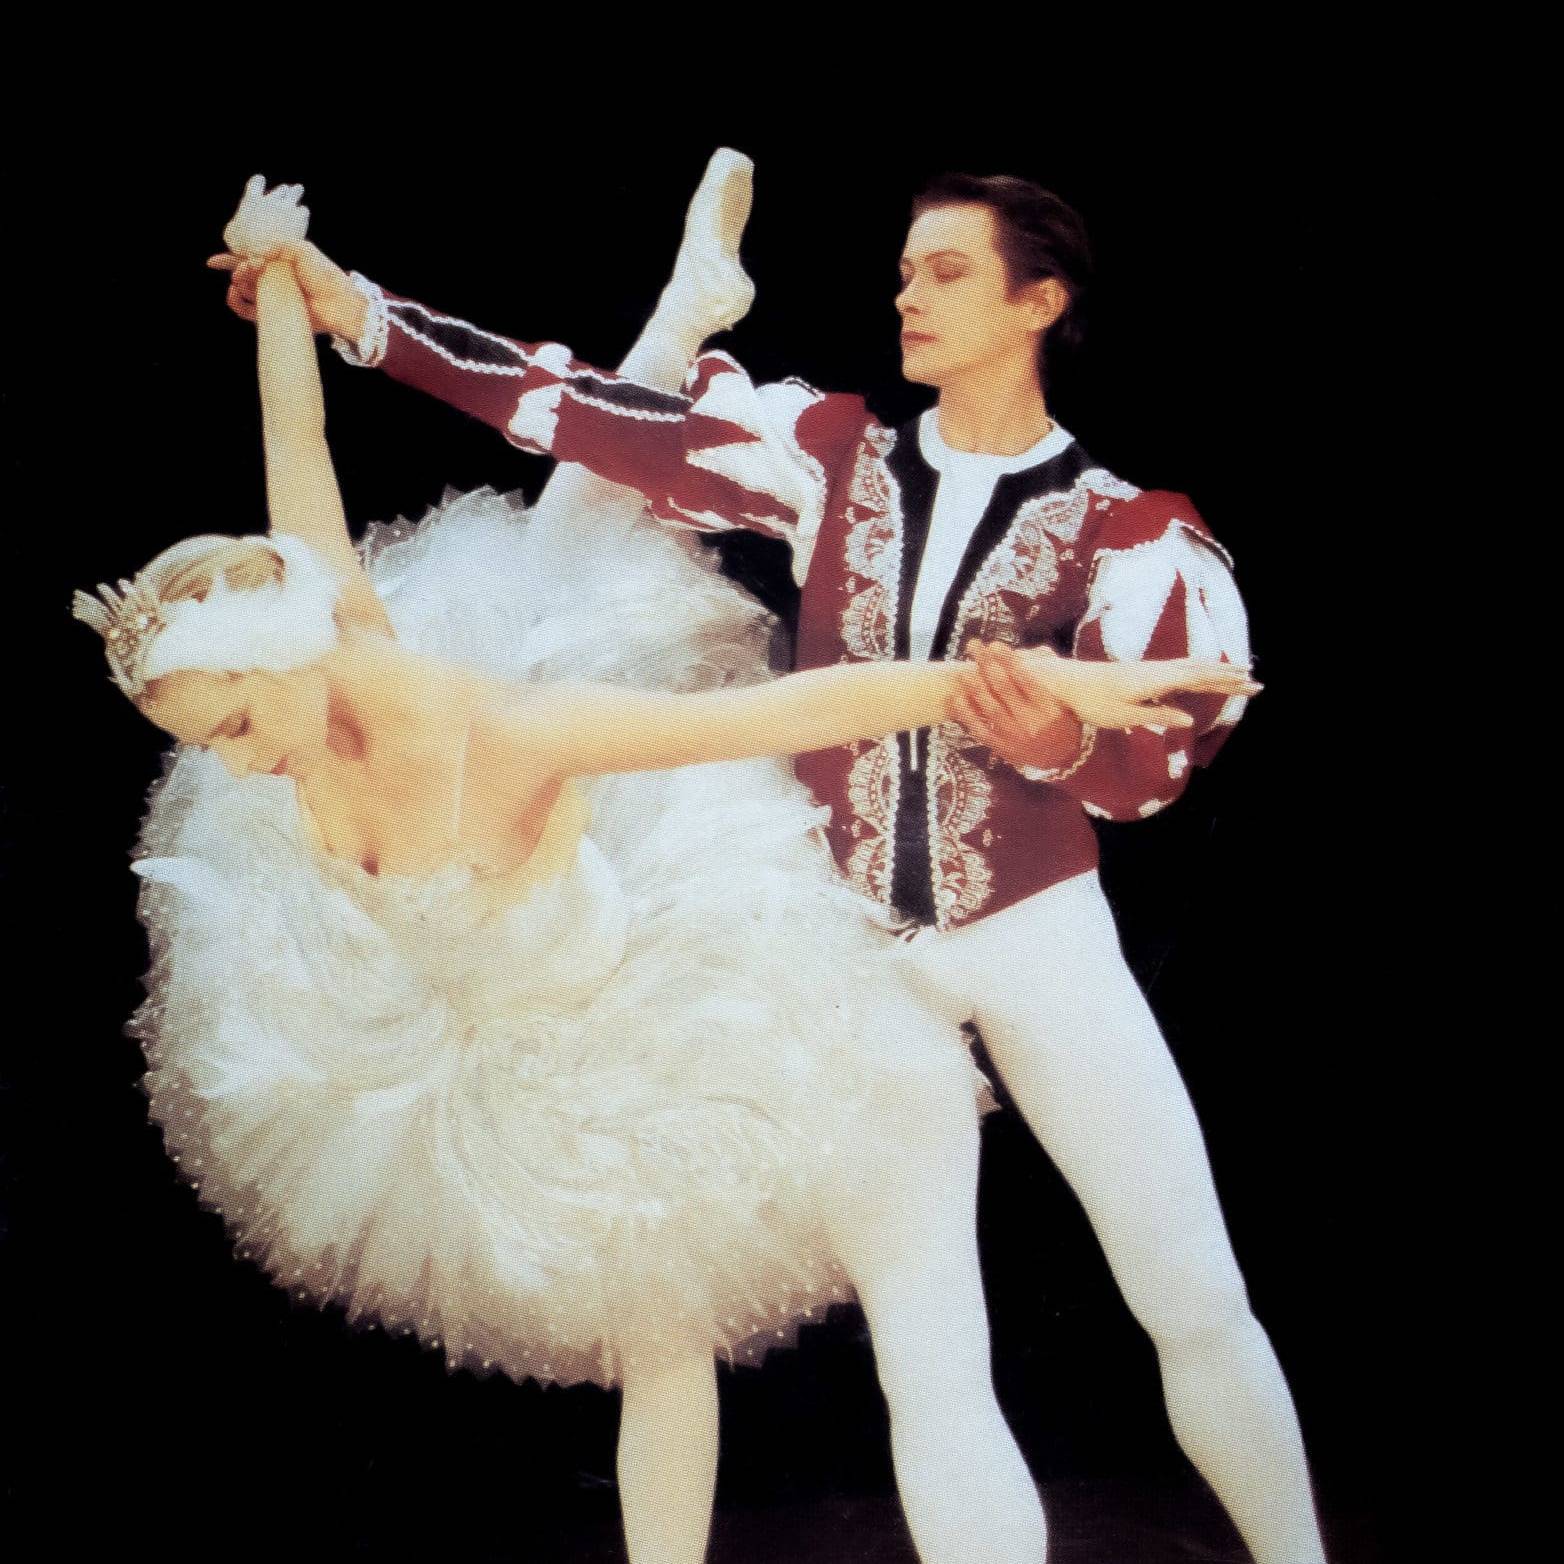 les deux costumes réalisés pour deux danseurs de ballet